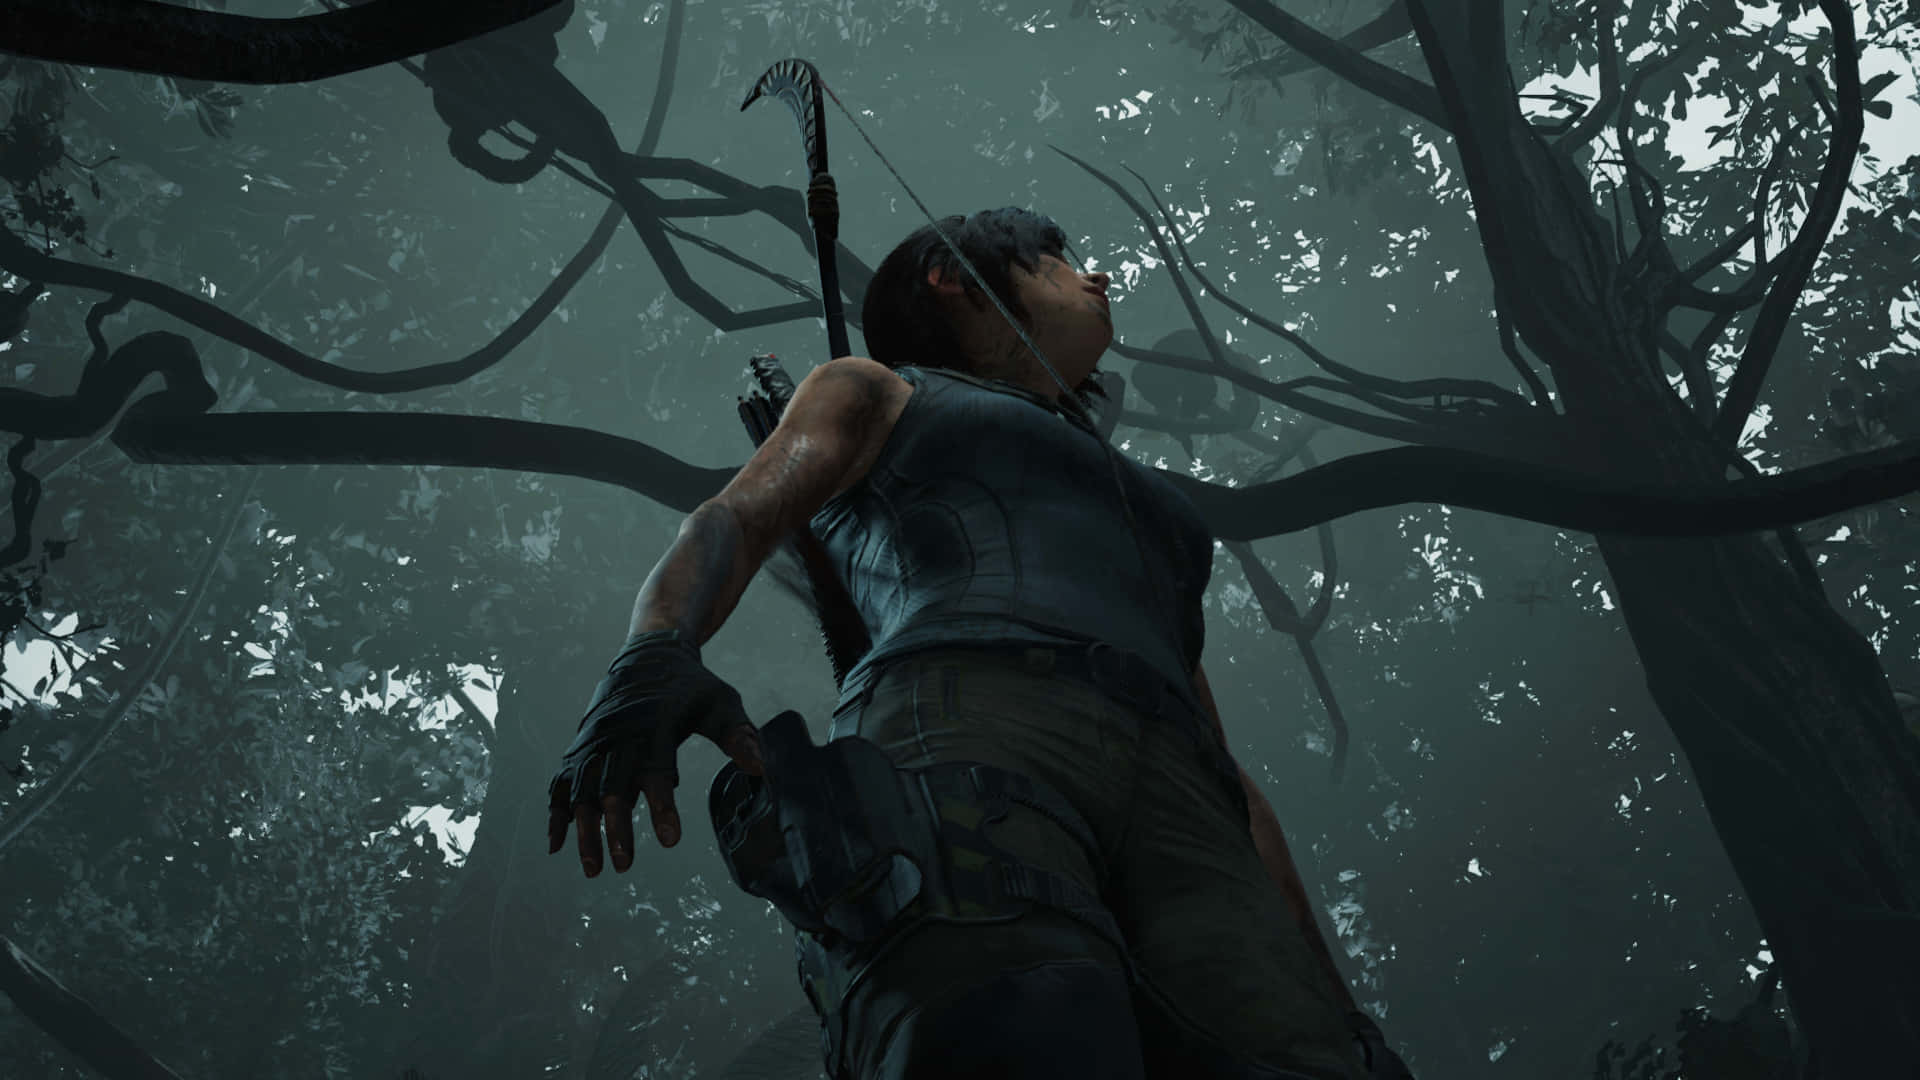 Laracroft Nimmt Die Herausforderung Als Tomb Raider An. Wallpaper